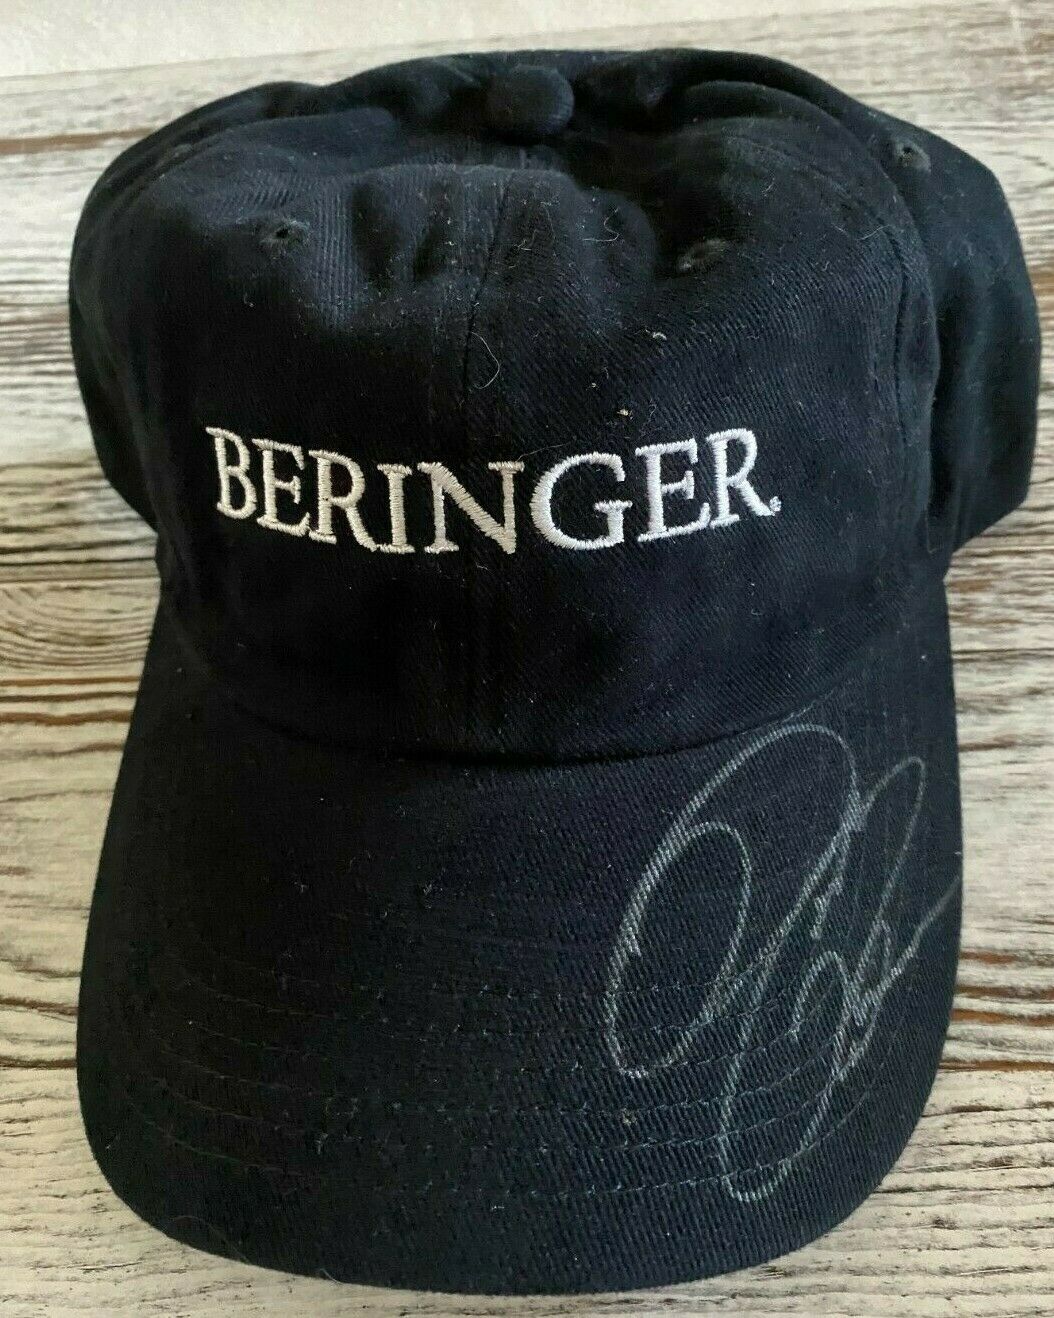 David Reutimann Beringer Vineyards Autographed Signed Hat Cap Nascar